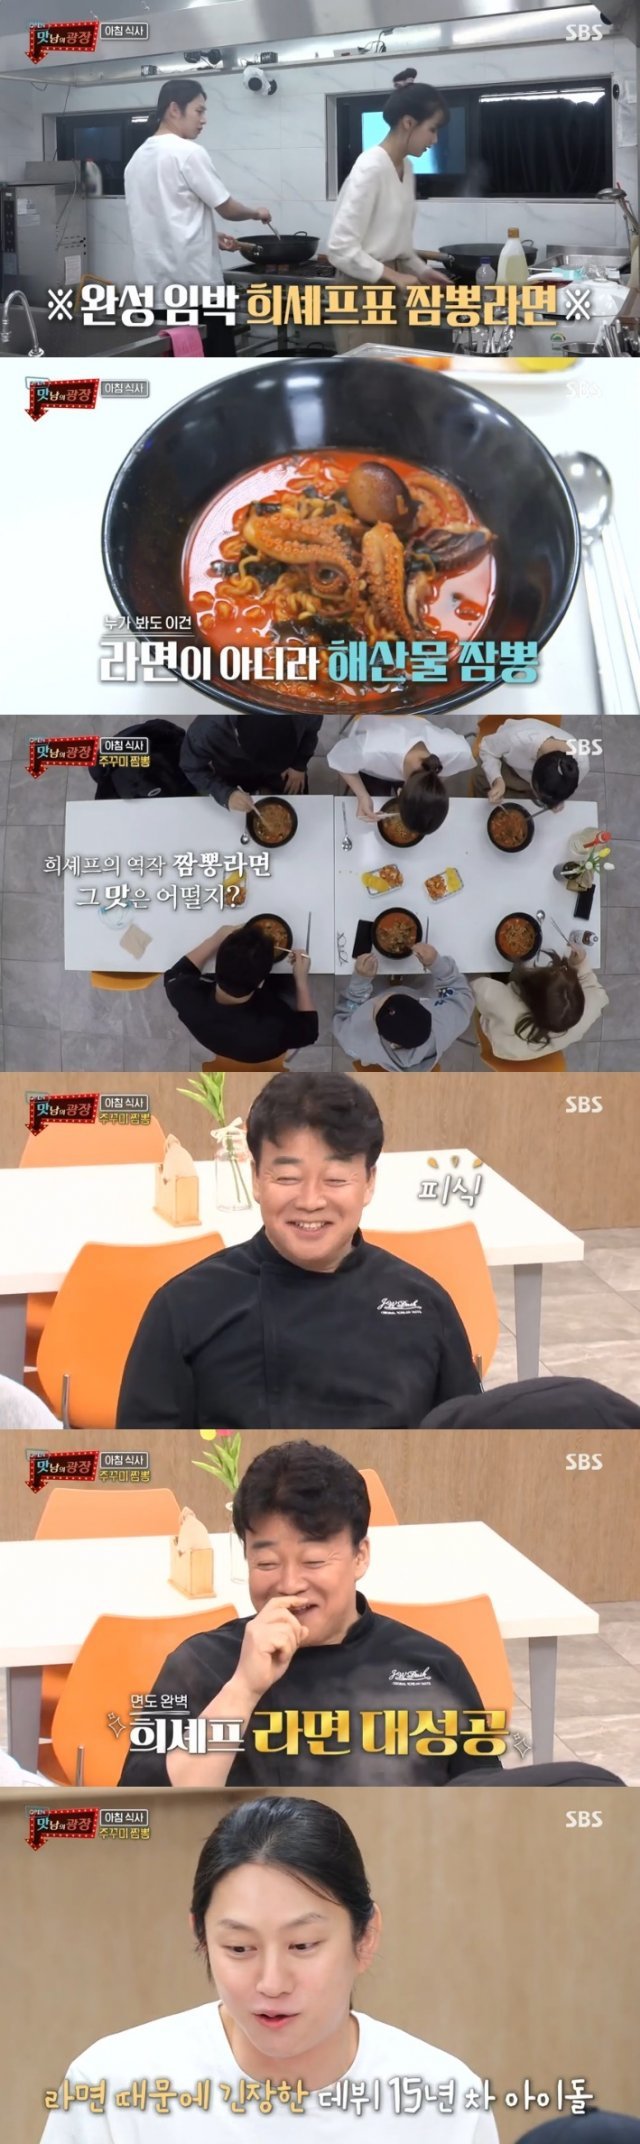 SBS ‘맛남의 광장’ 캡처